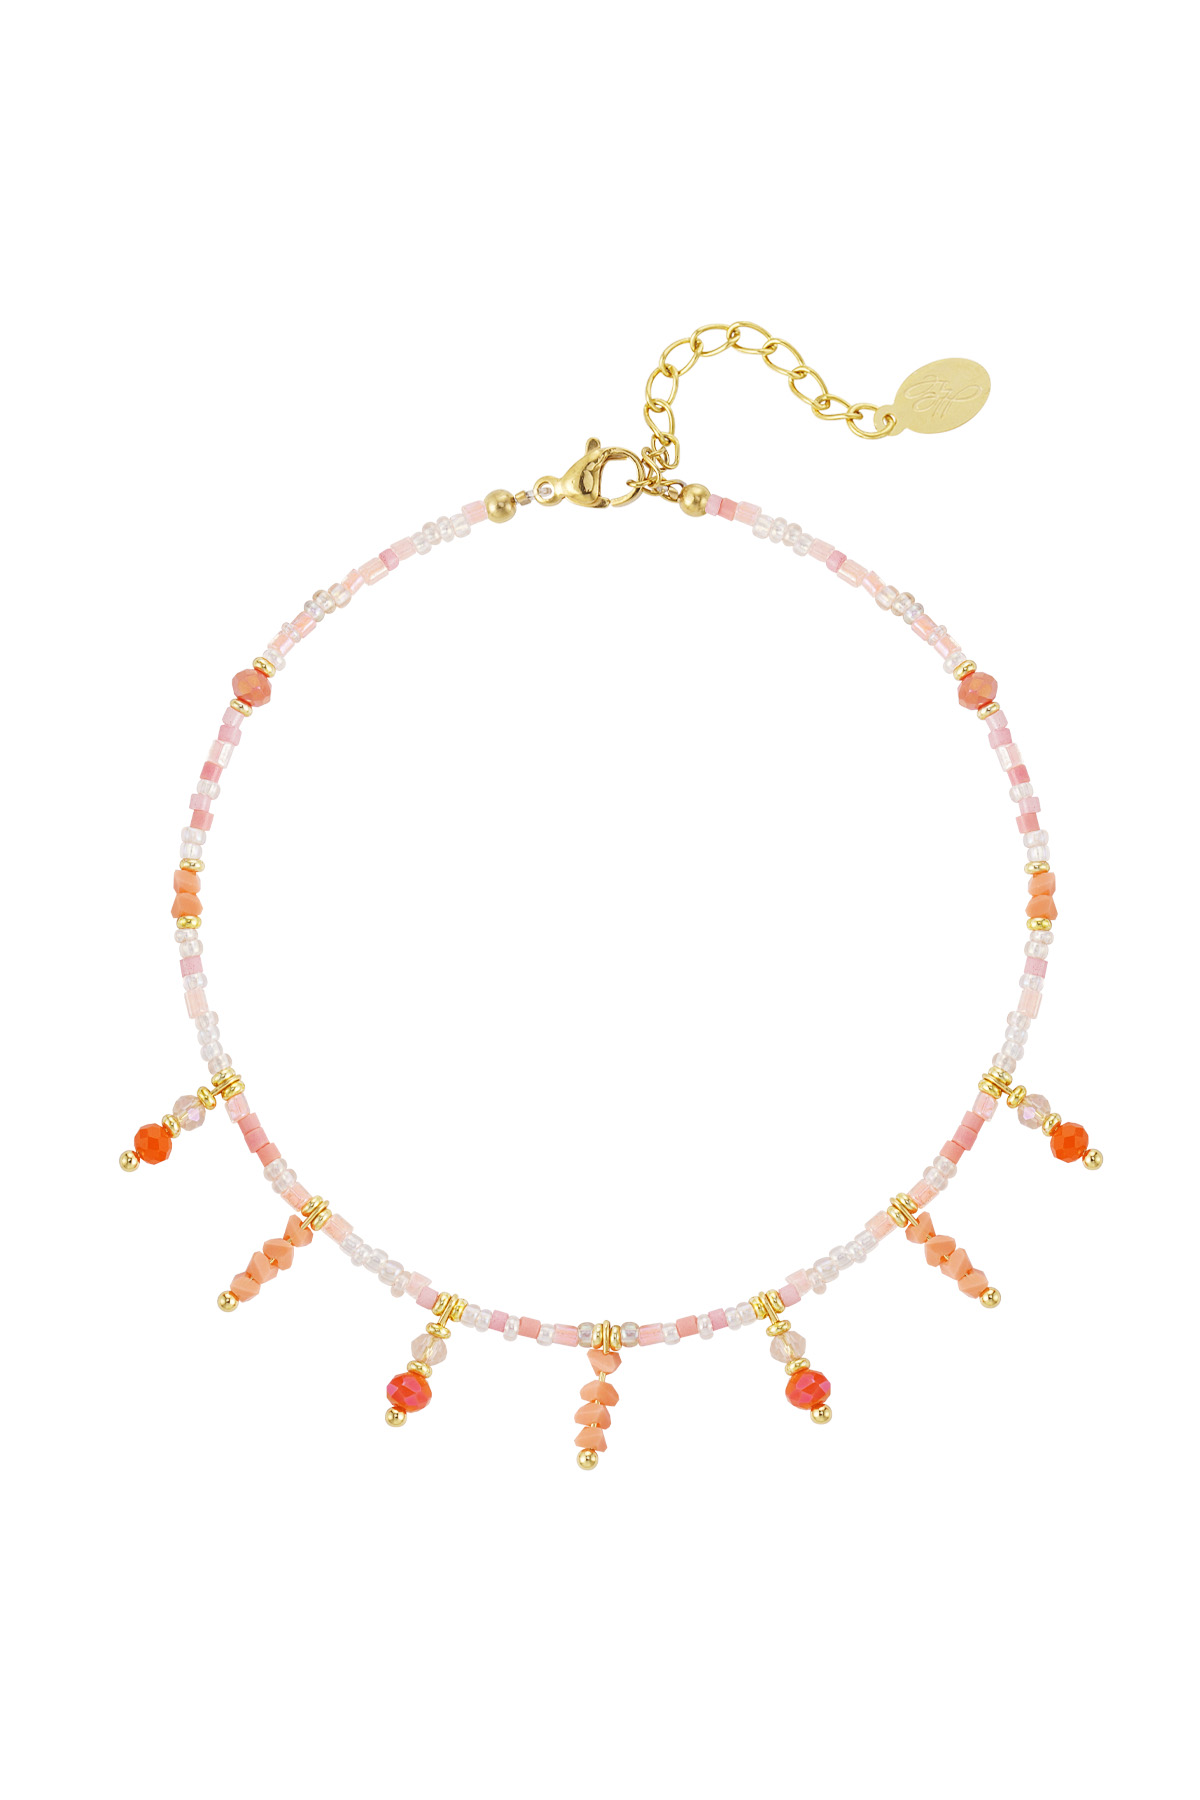 Kralen armband met kralen hangers- oranje / goud h5 